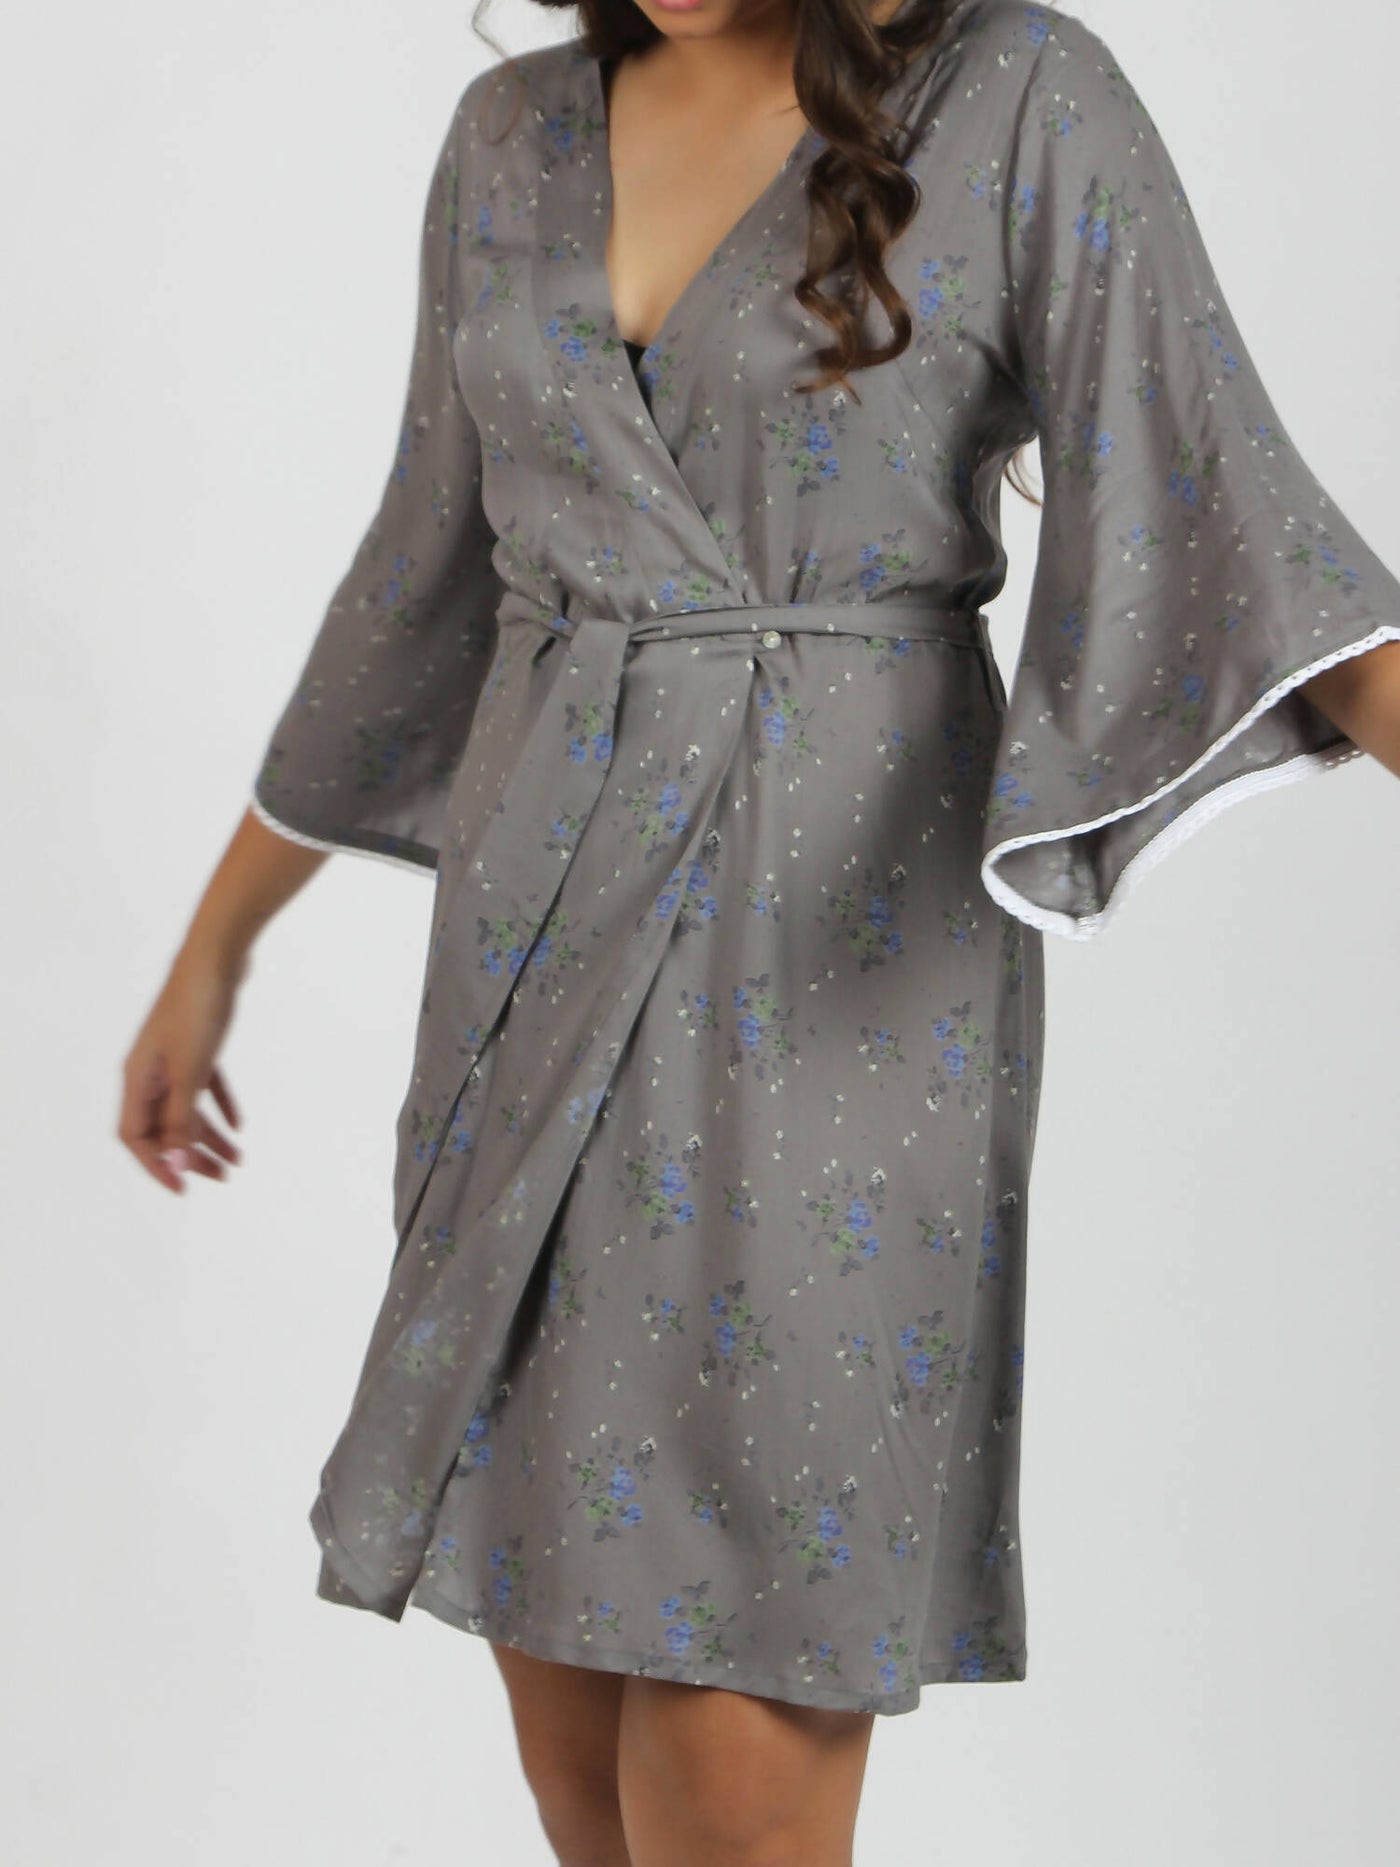 Smoky Modal Home Dress/Robe